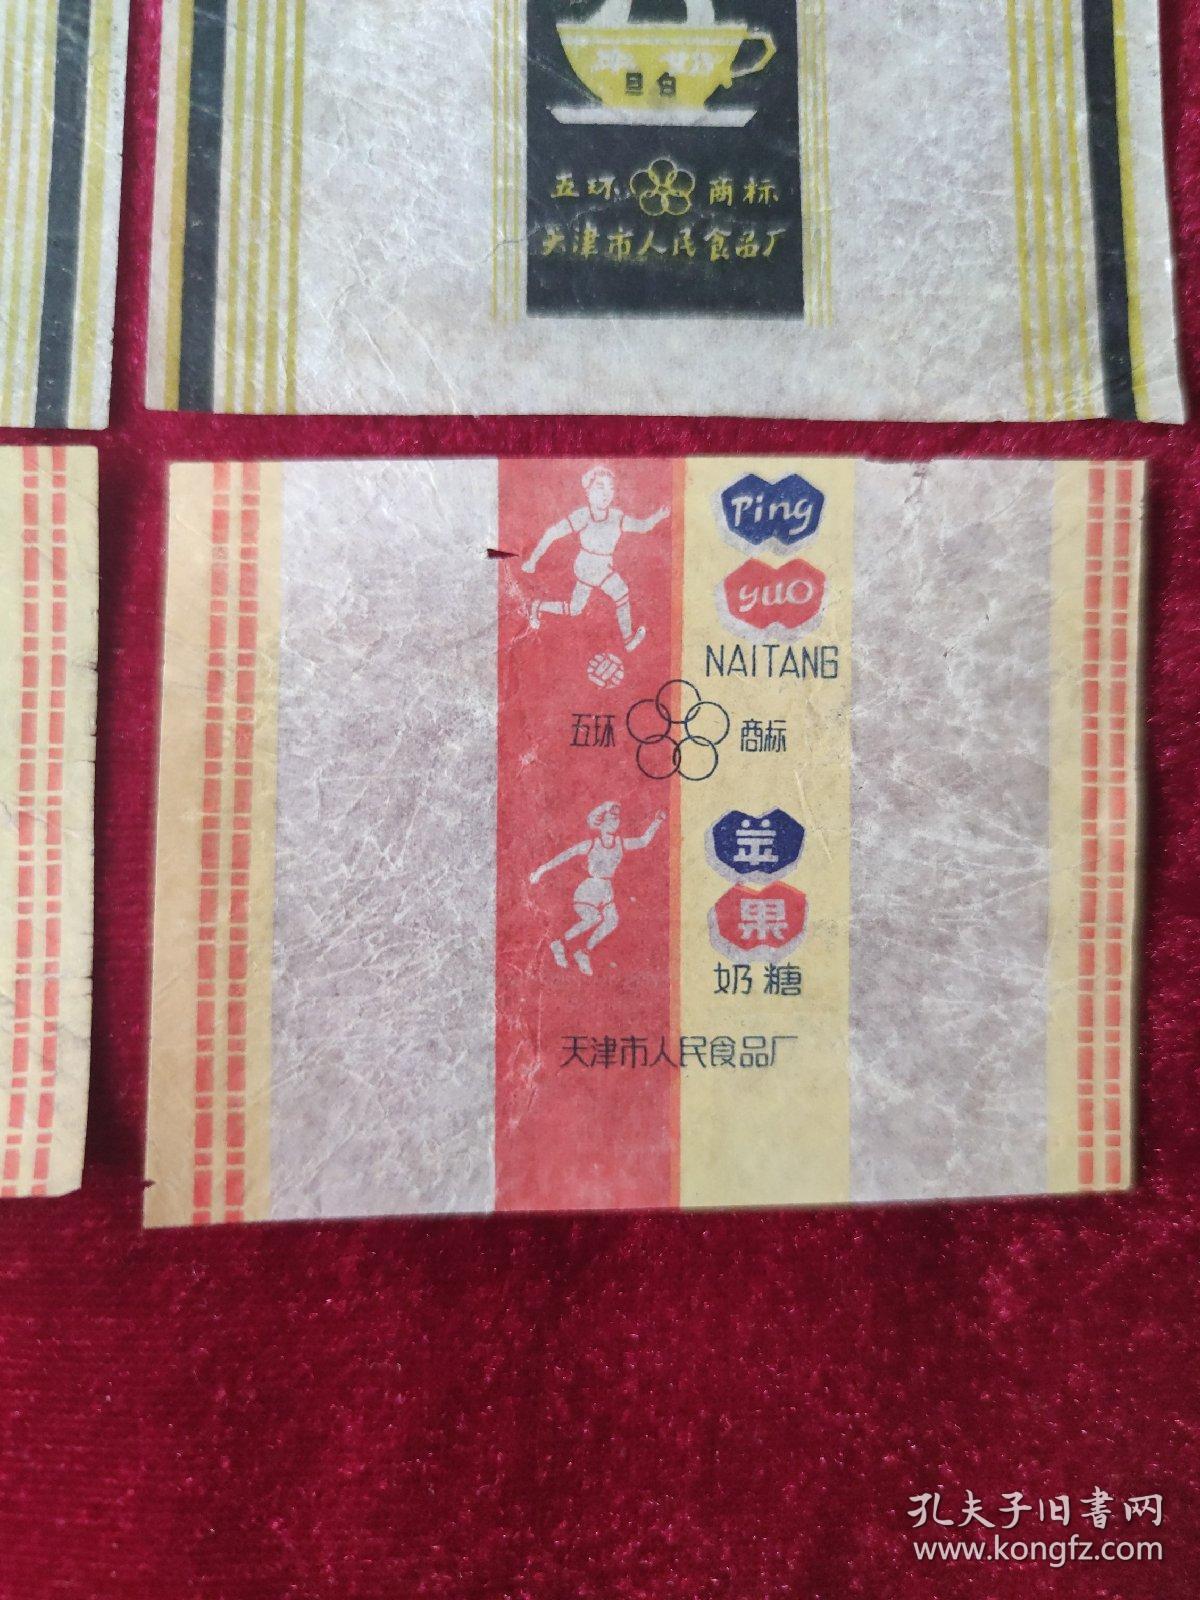 糖纸 五环商标 牛奶旦白糖纸、芒果奶白糖纸、苹果奶糖糖纸  天津市人民食品厂